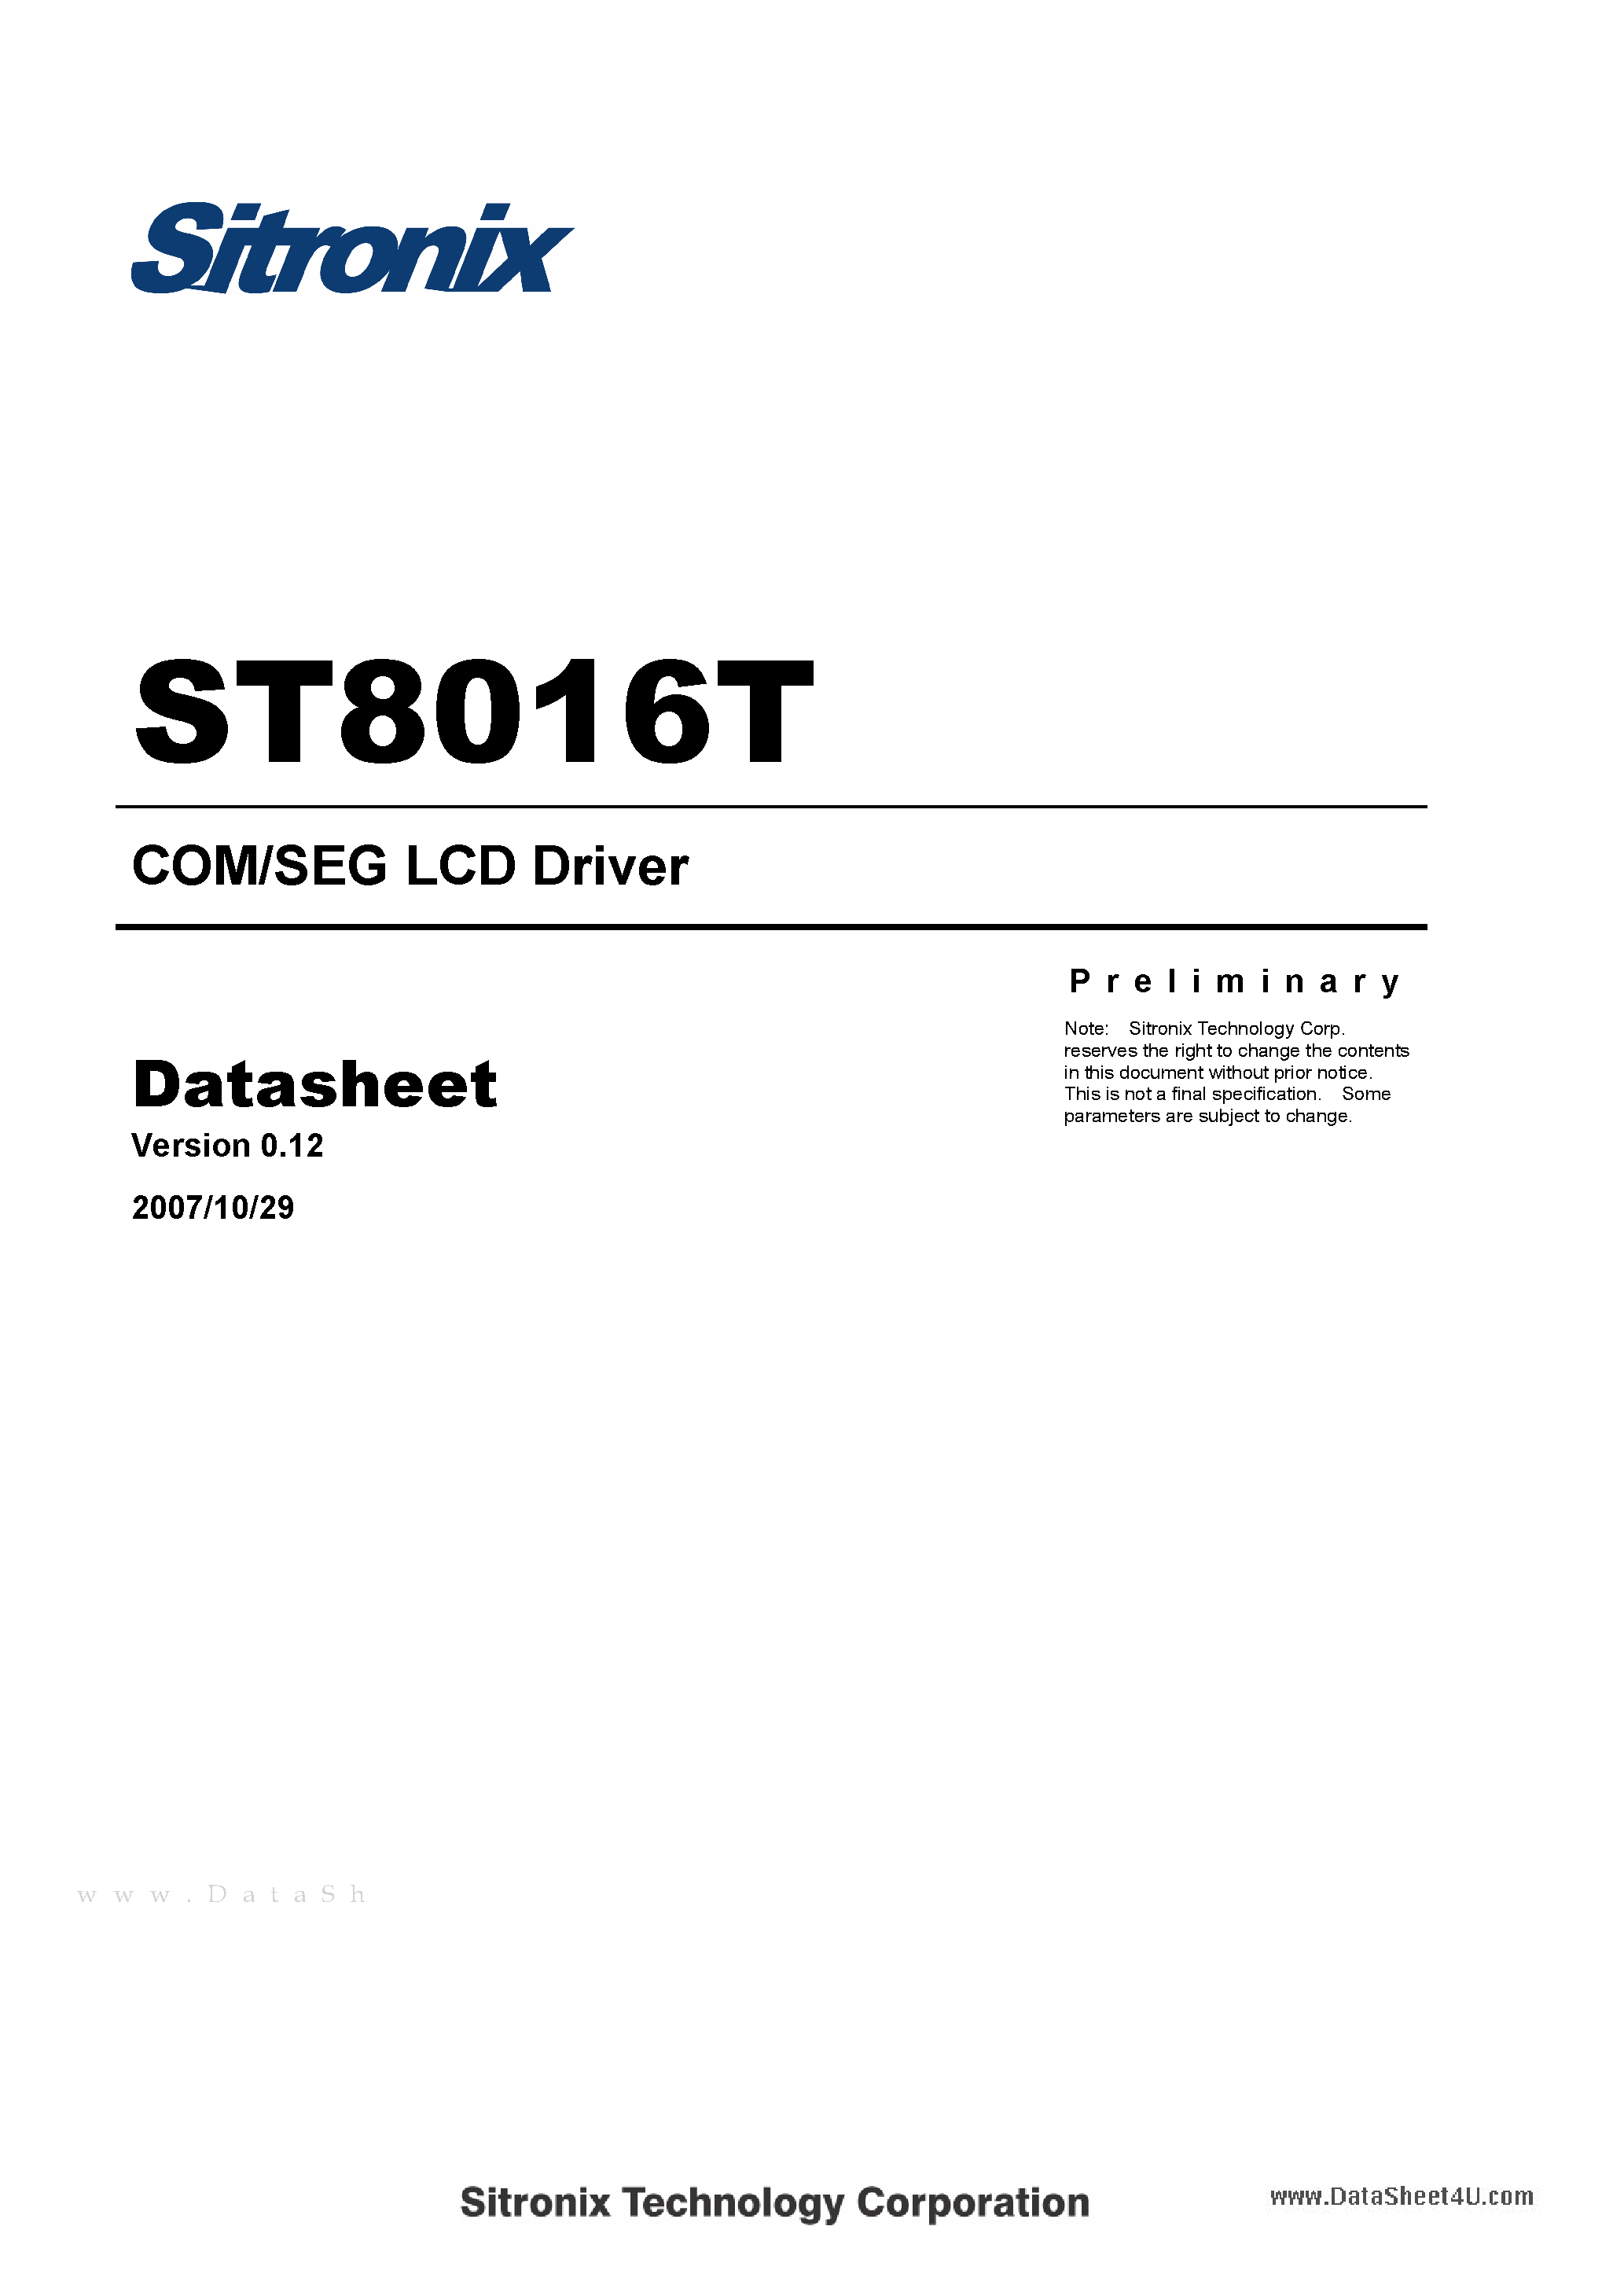 Даташит ST8016T - COM/SEG LCD Driver страница 1